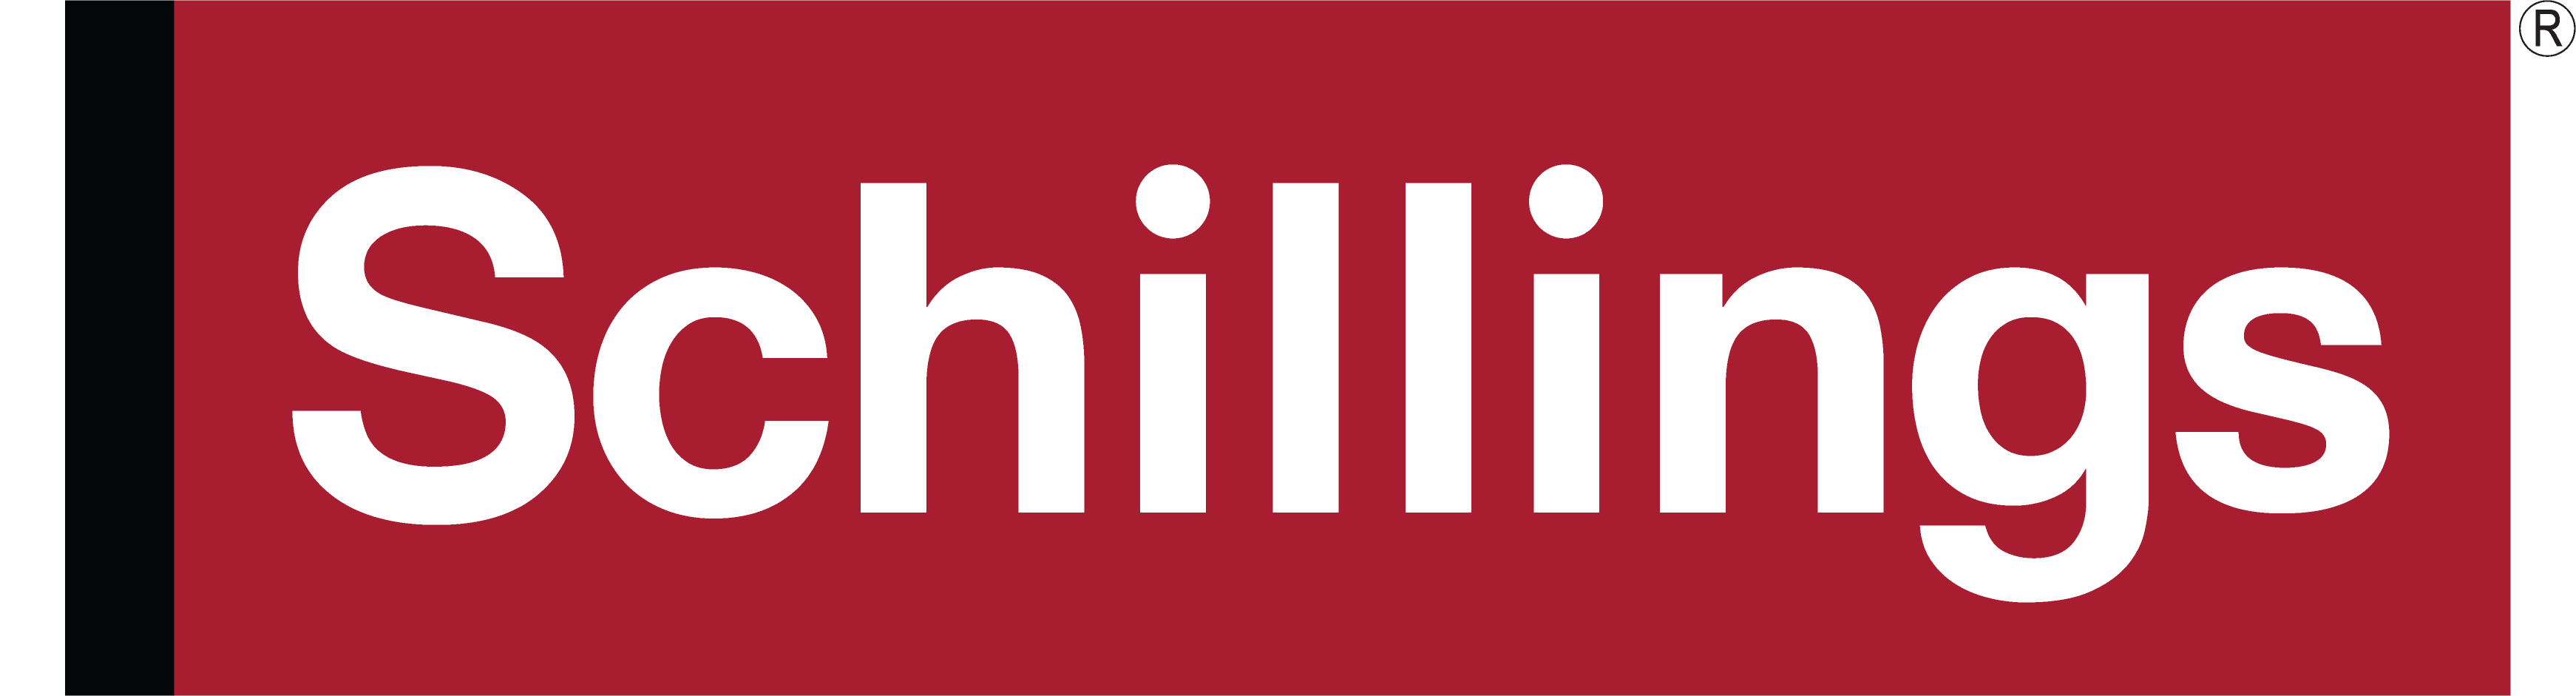 Schillings Logo - For Light Backgrounds